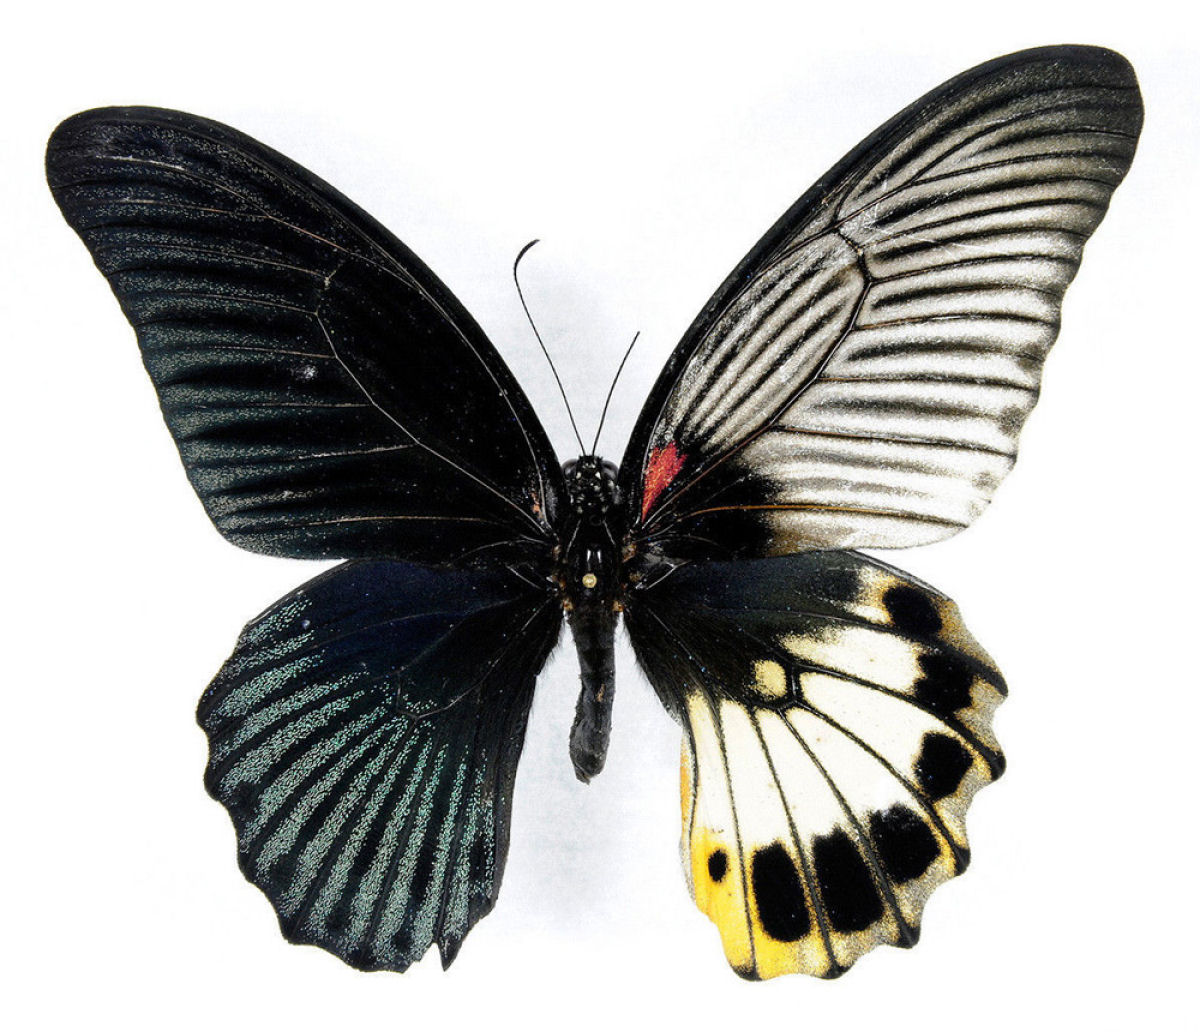 Anomalia gentica cria borboletas com belas asas de cores diferentes 06